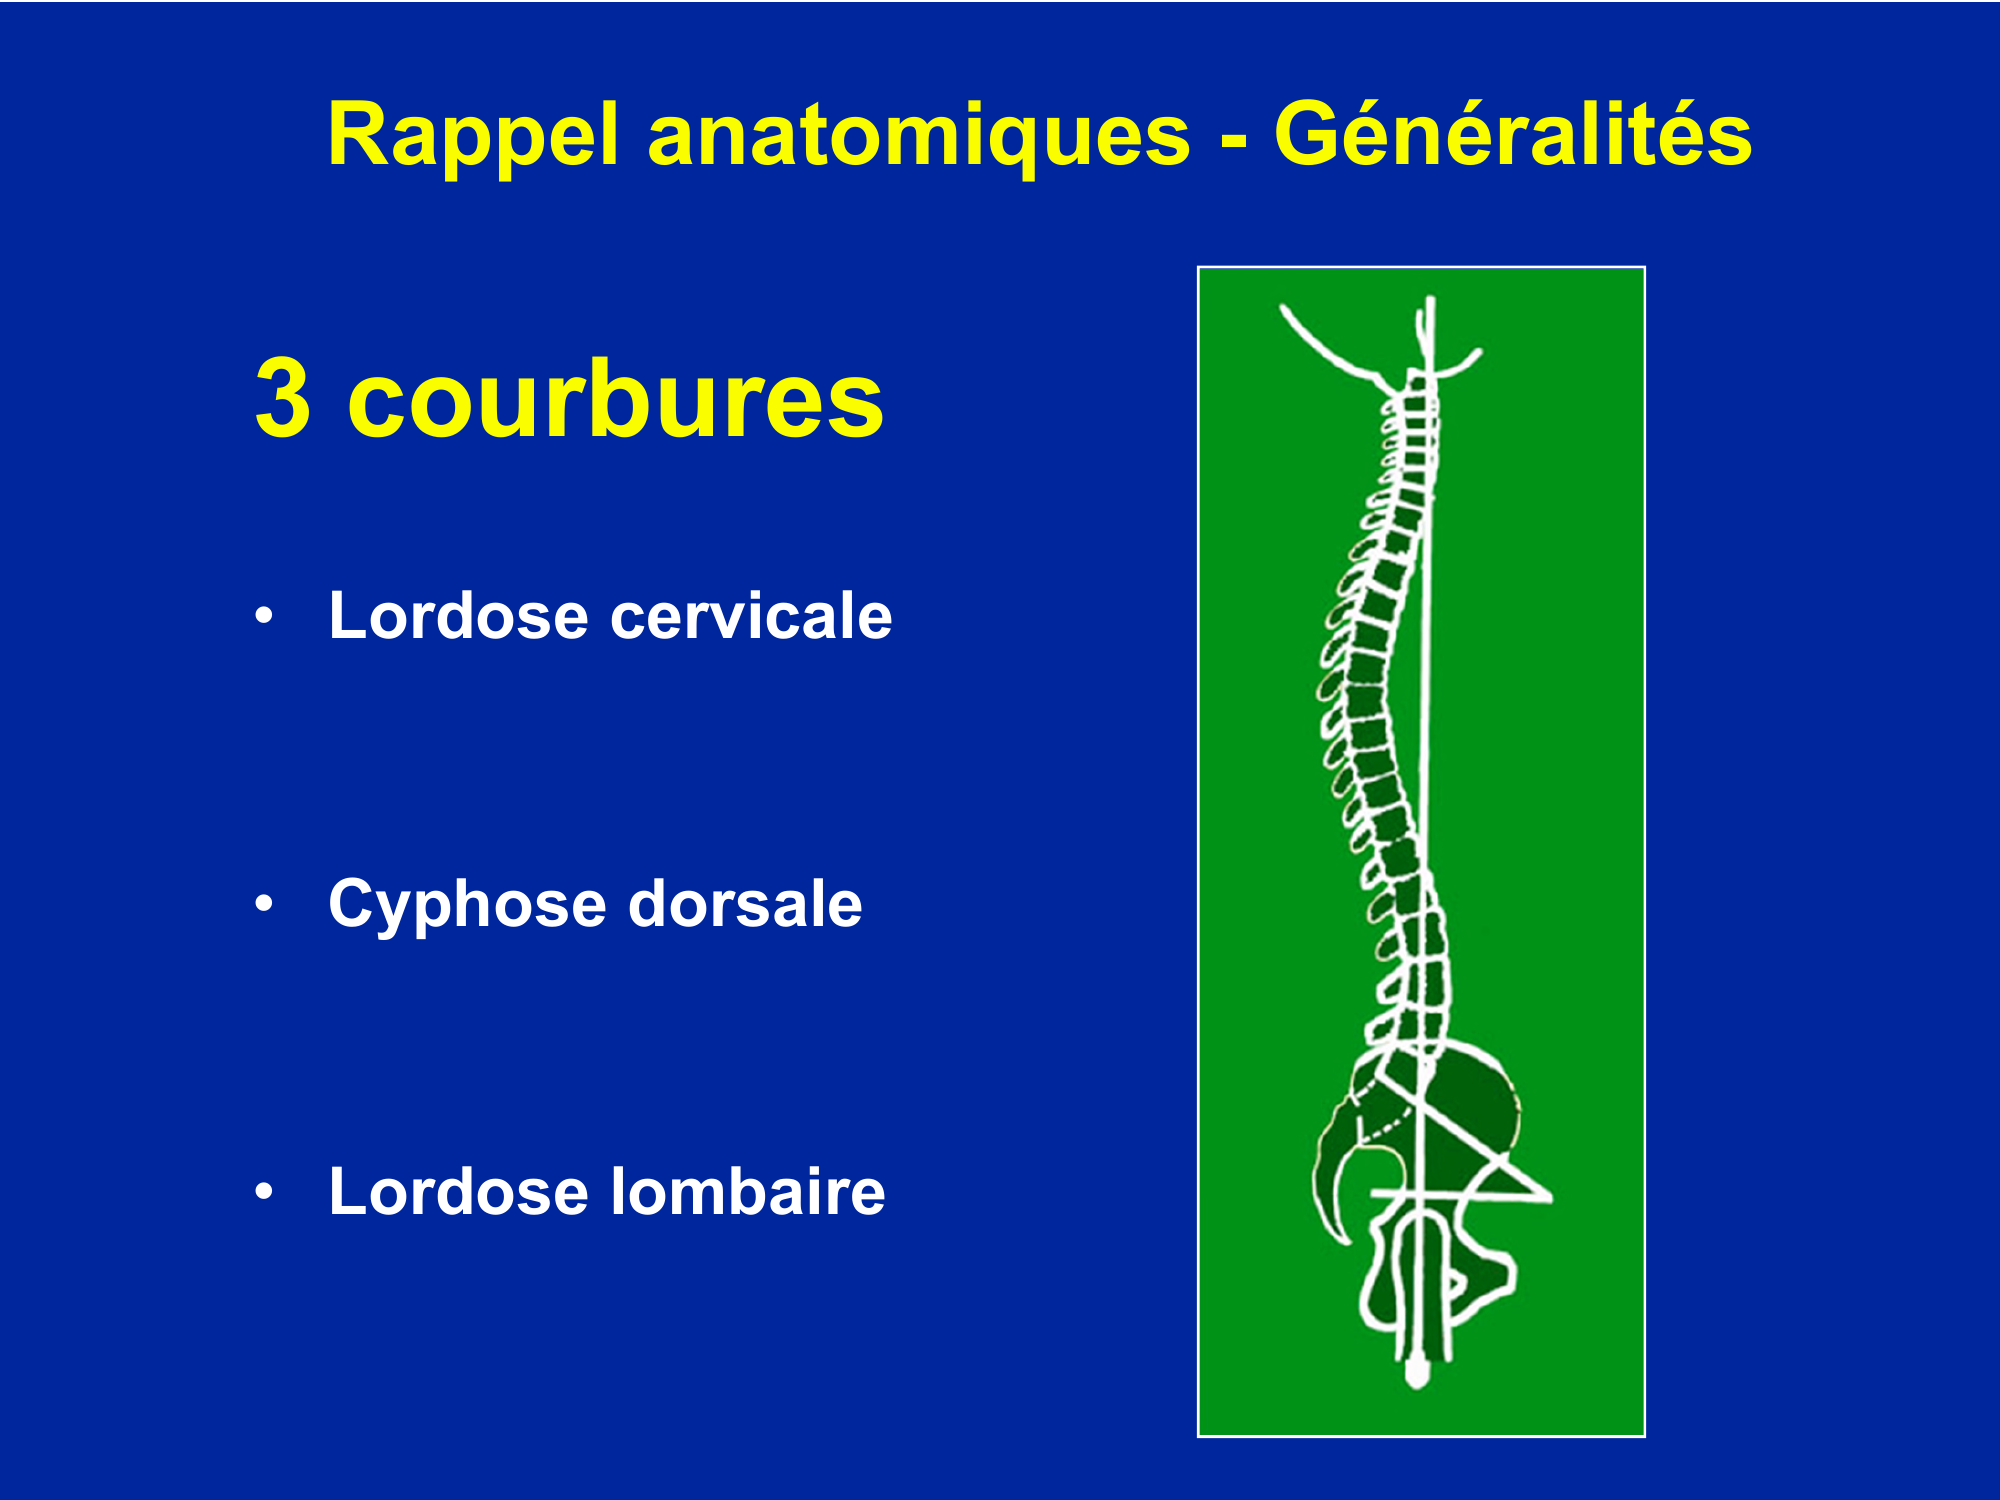 Prévisualisation du document Rappel anatomiques - Généralités

3 courbures
o Lordose cervicale

o Cyphose dorsale

o Lordose